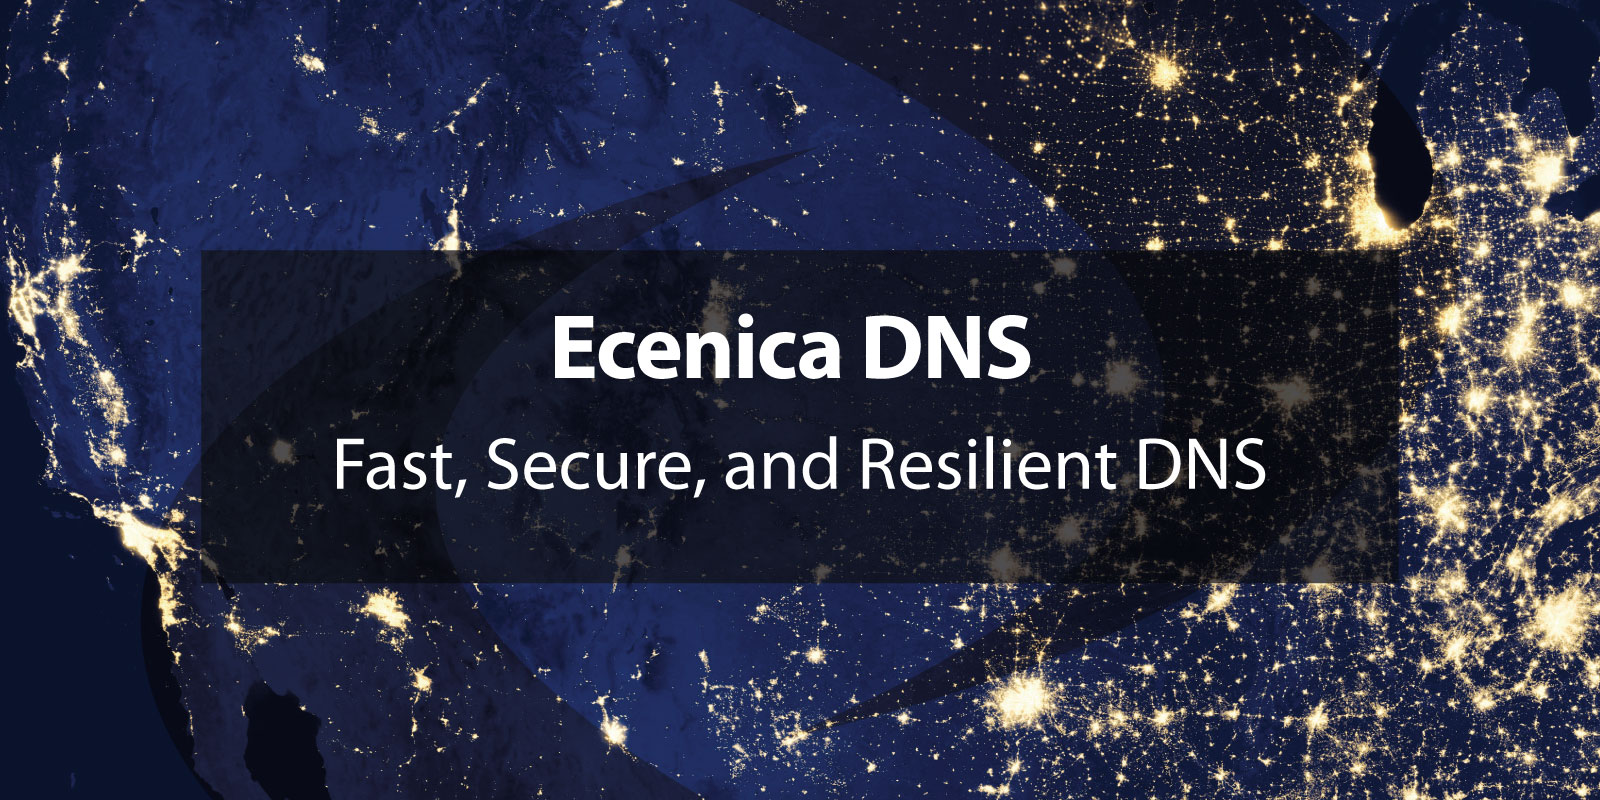 New Ecenica DNS